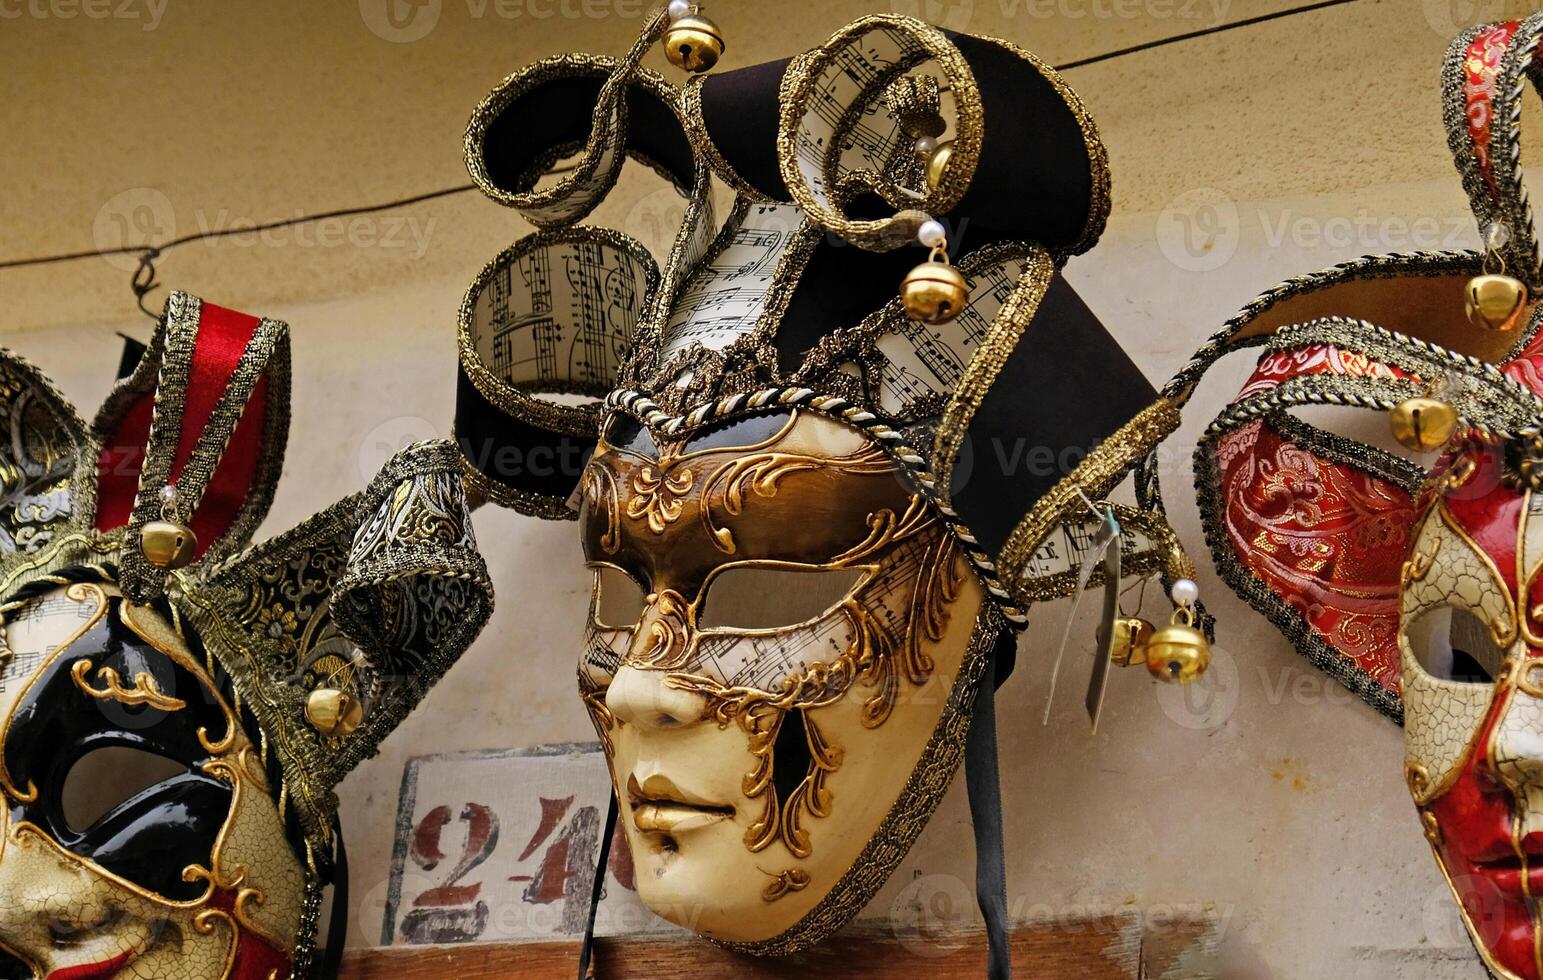 traditionnel vénitien masques sur étagères dans souvenirs magasin dans Venise, Italie. magnifique carnaval masques dans variété de couleurs. authentique et original vénitien visage complet masques pour carnaval. photo